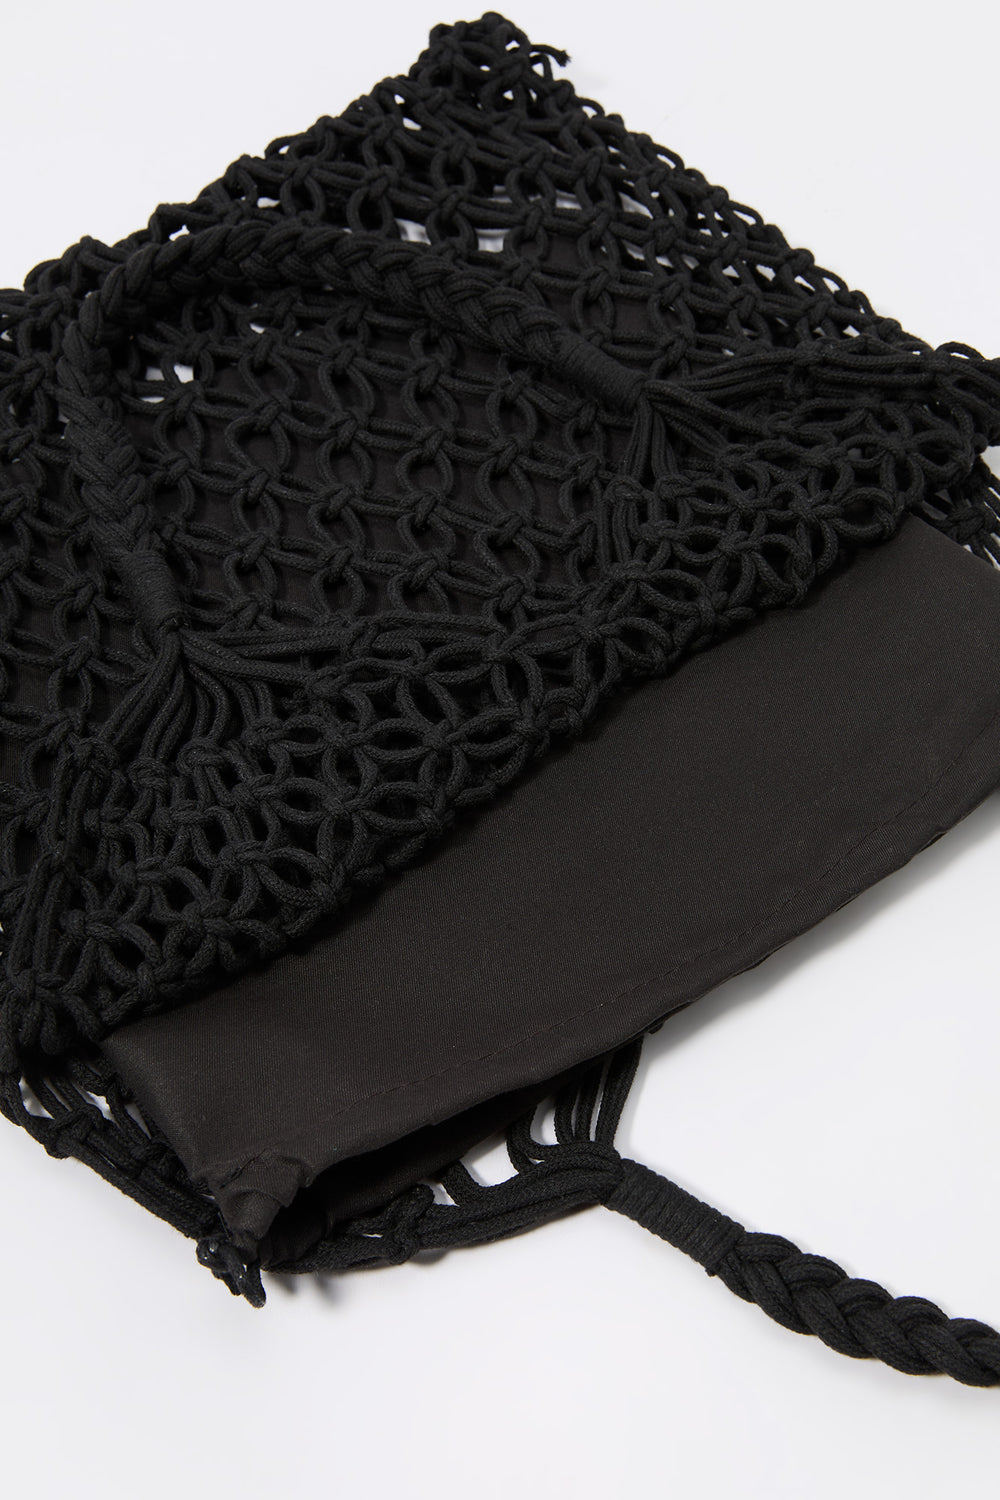 Crochet Handbag Crochet Handbag 5